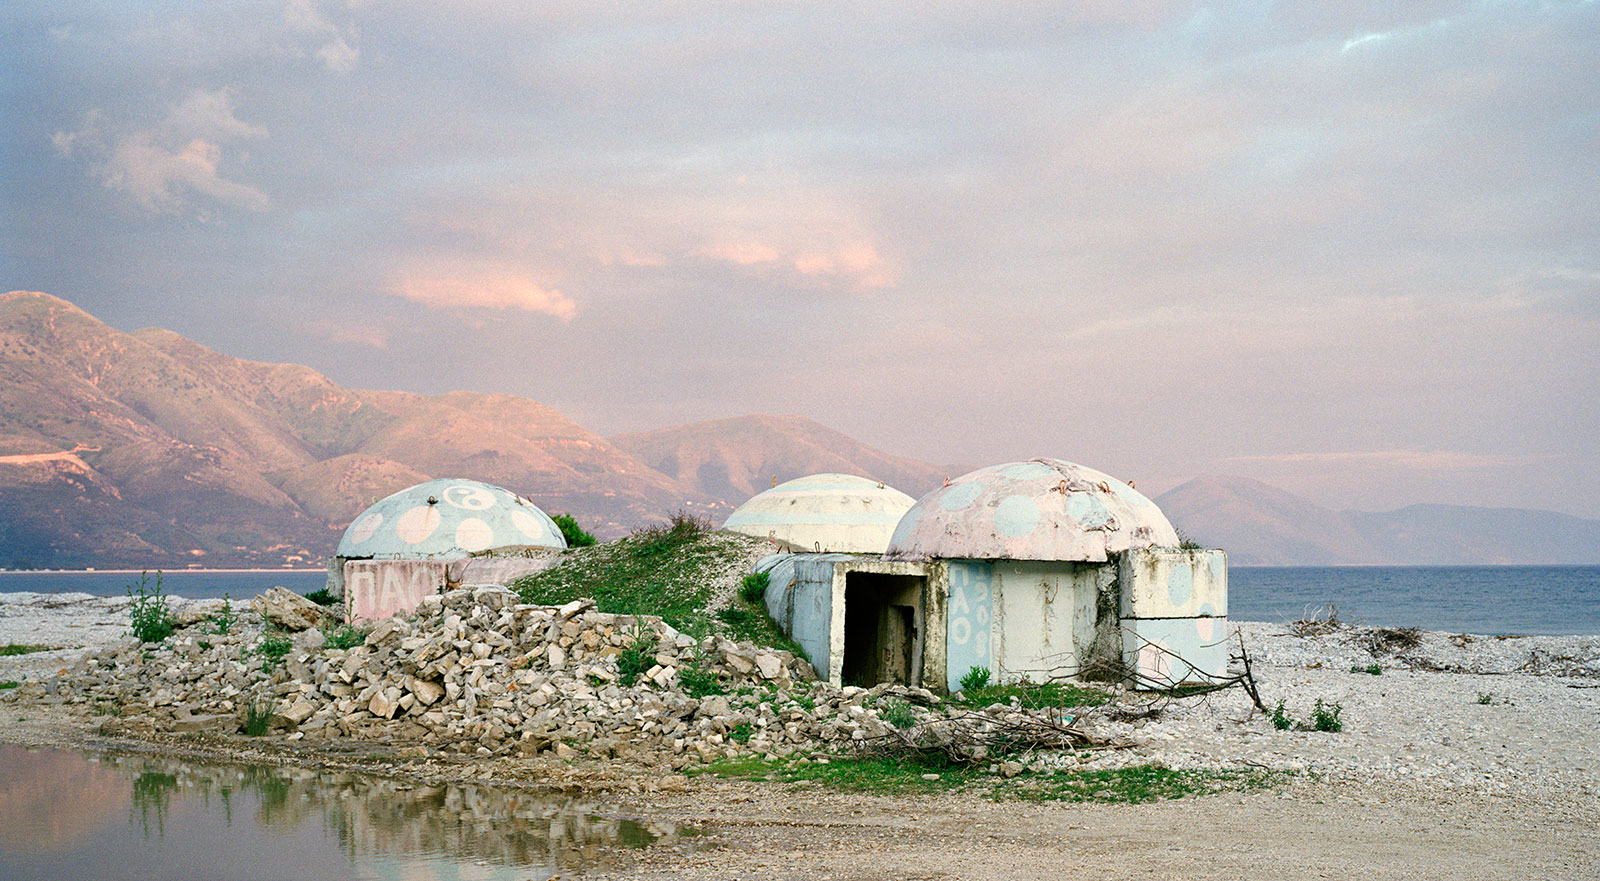 Albánský roadtrip: historie a bunkry 2